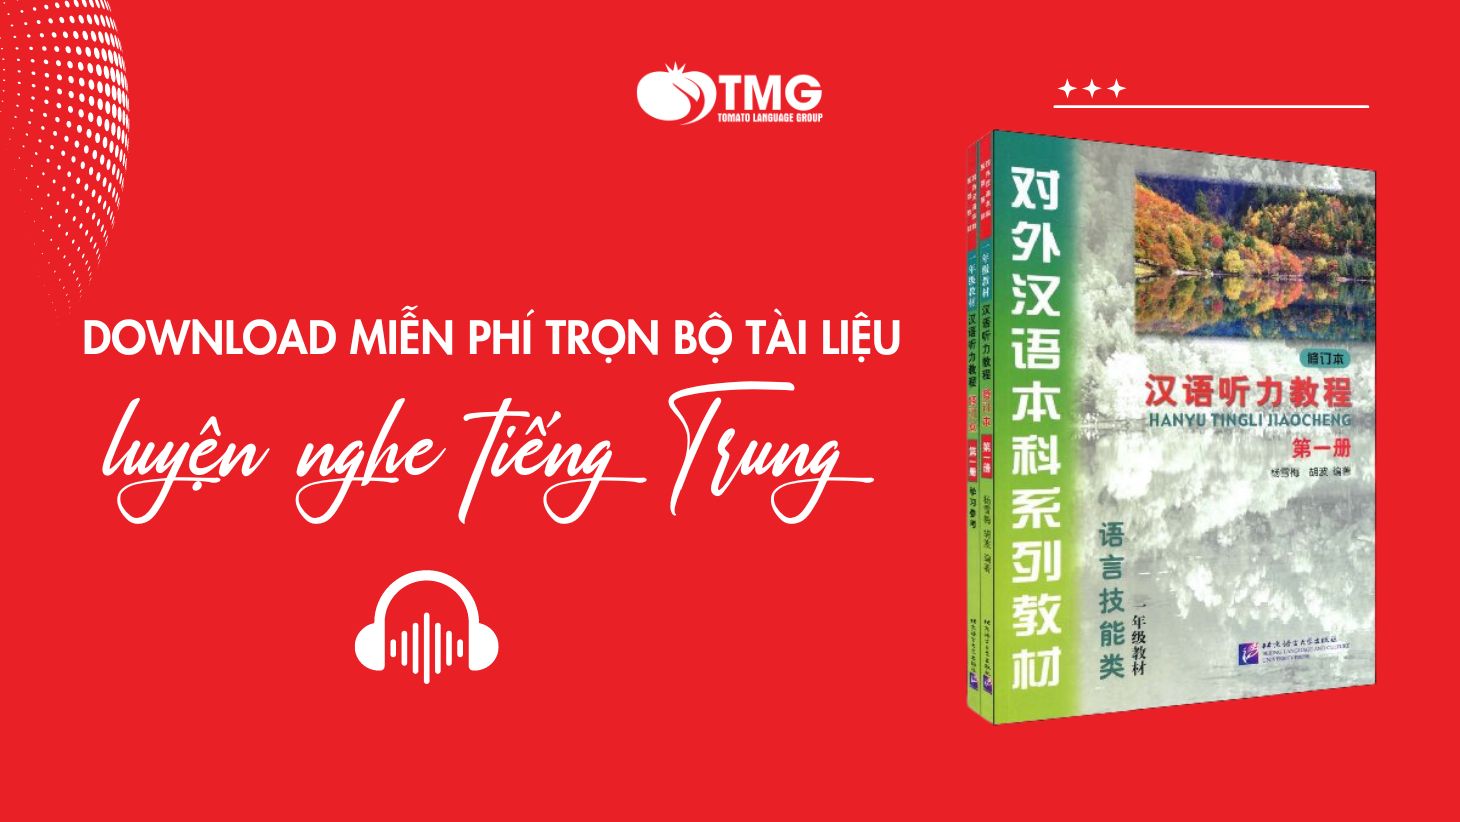 Tài liệu luyện nghe tiếng Trung hoàn toàn miễn phí